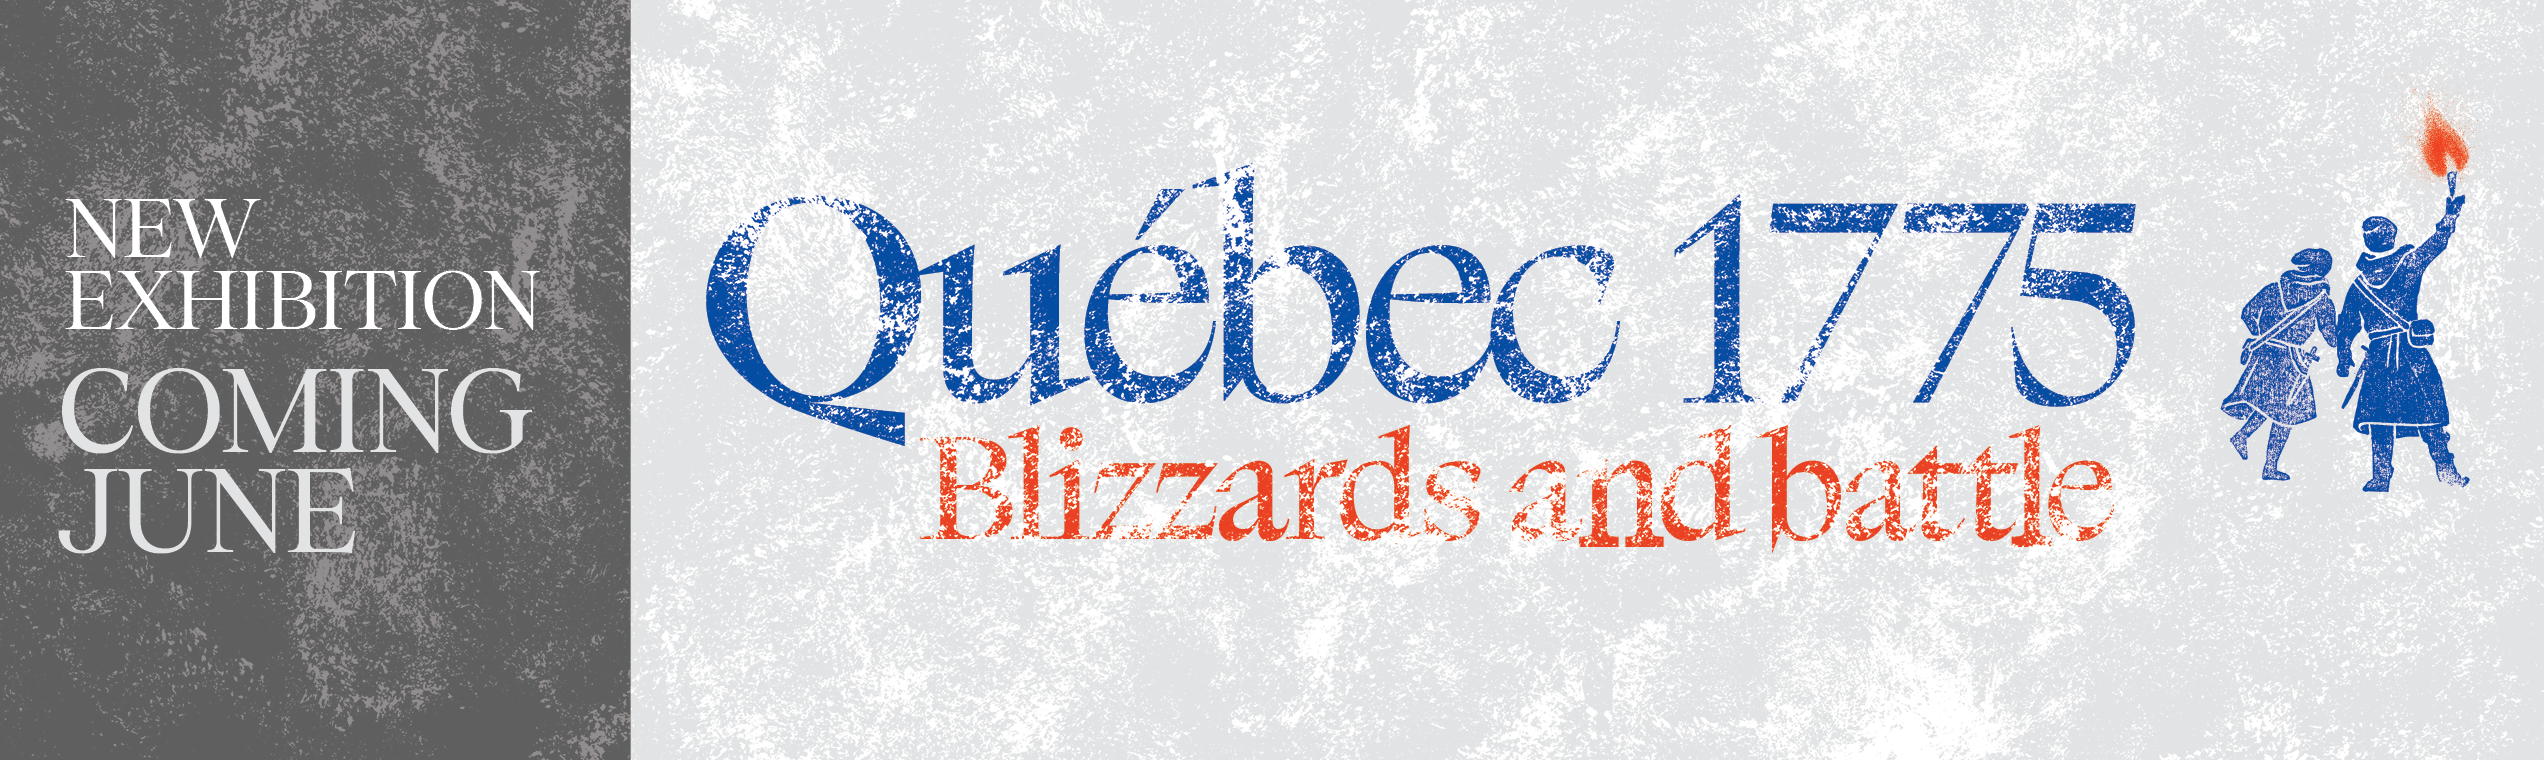 Québec 1775, blizzards and battle